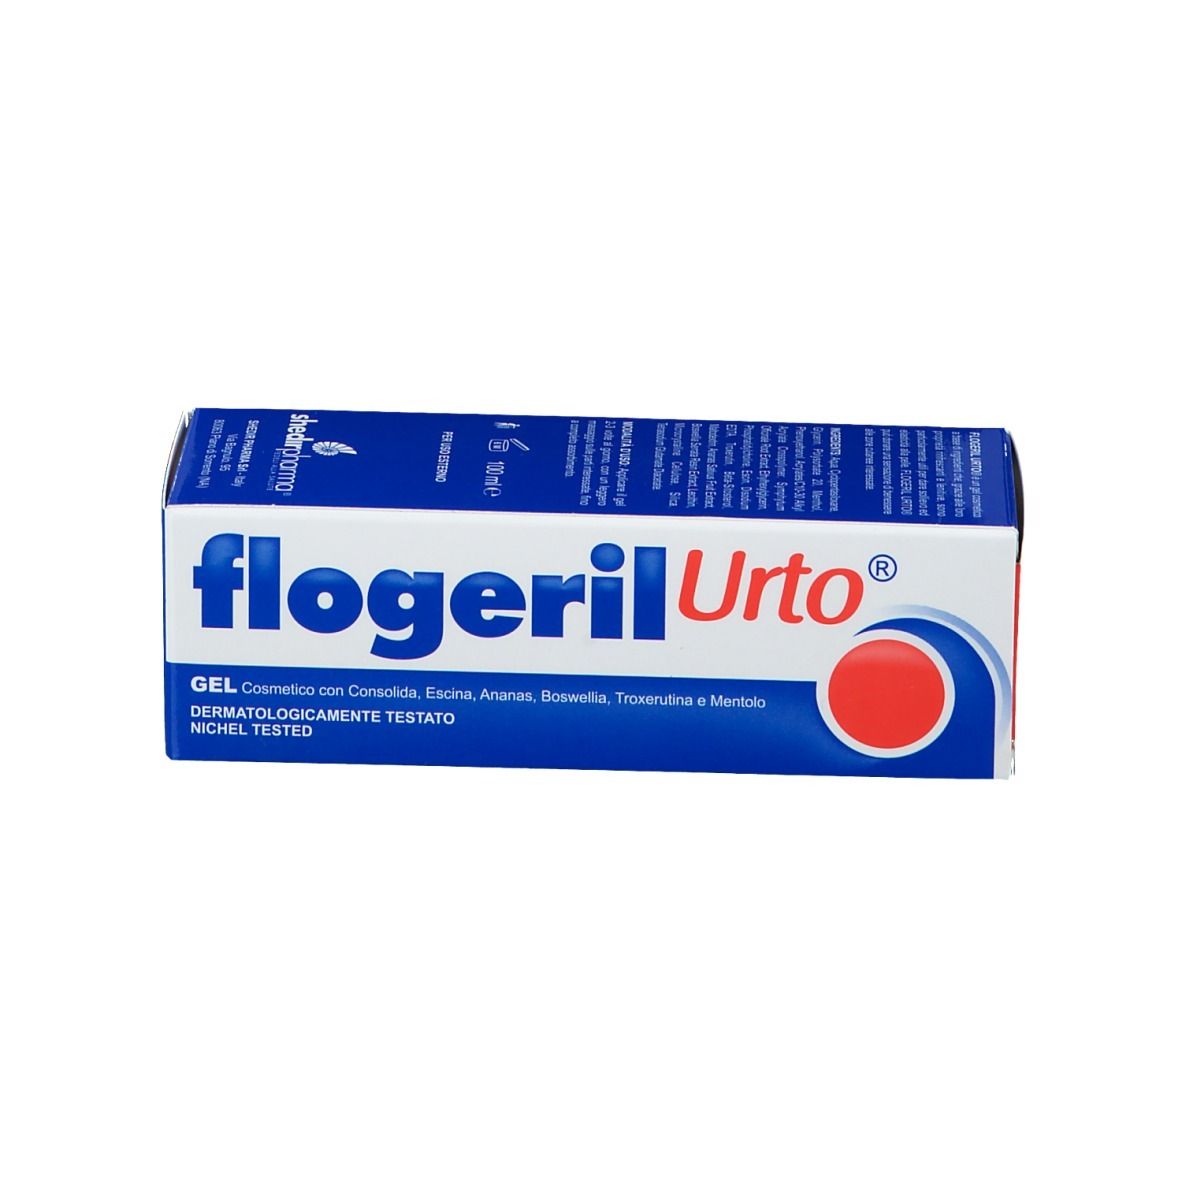 Flogeril Urto®